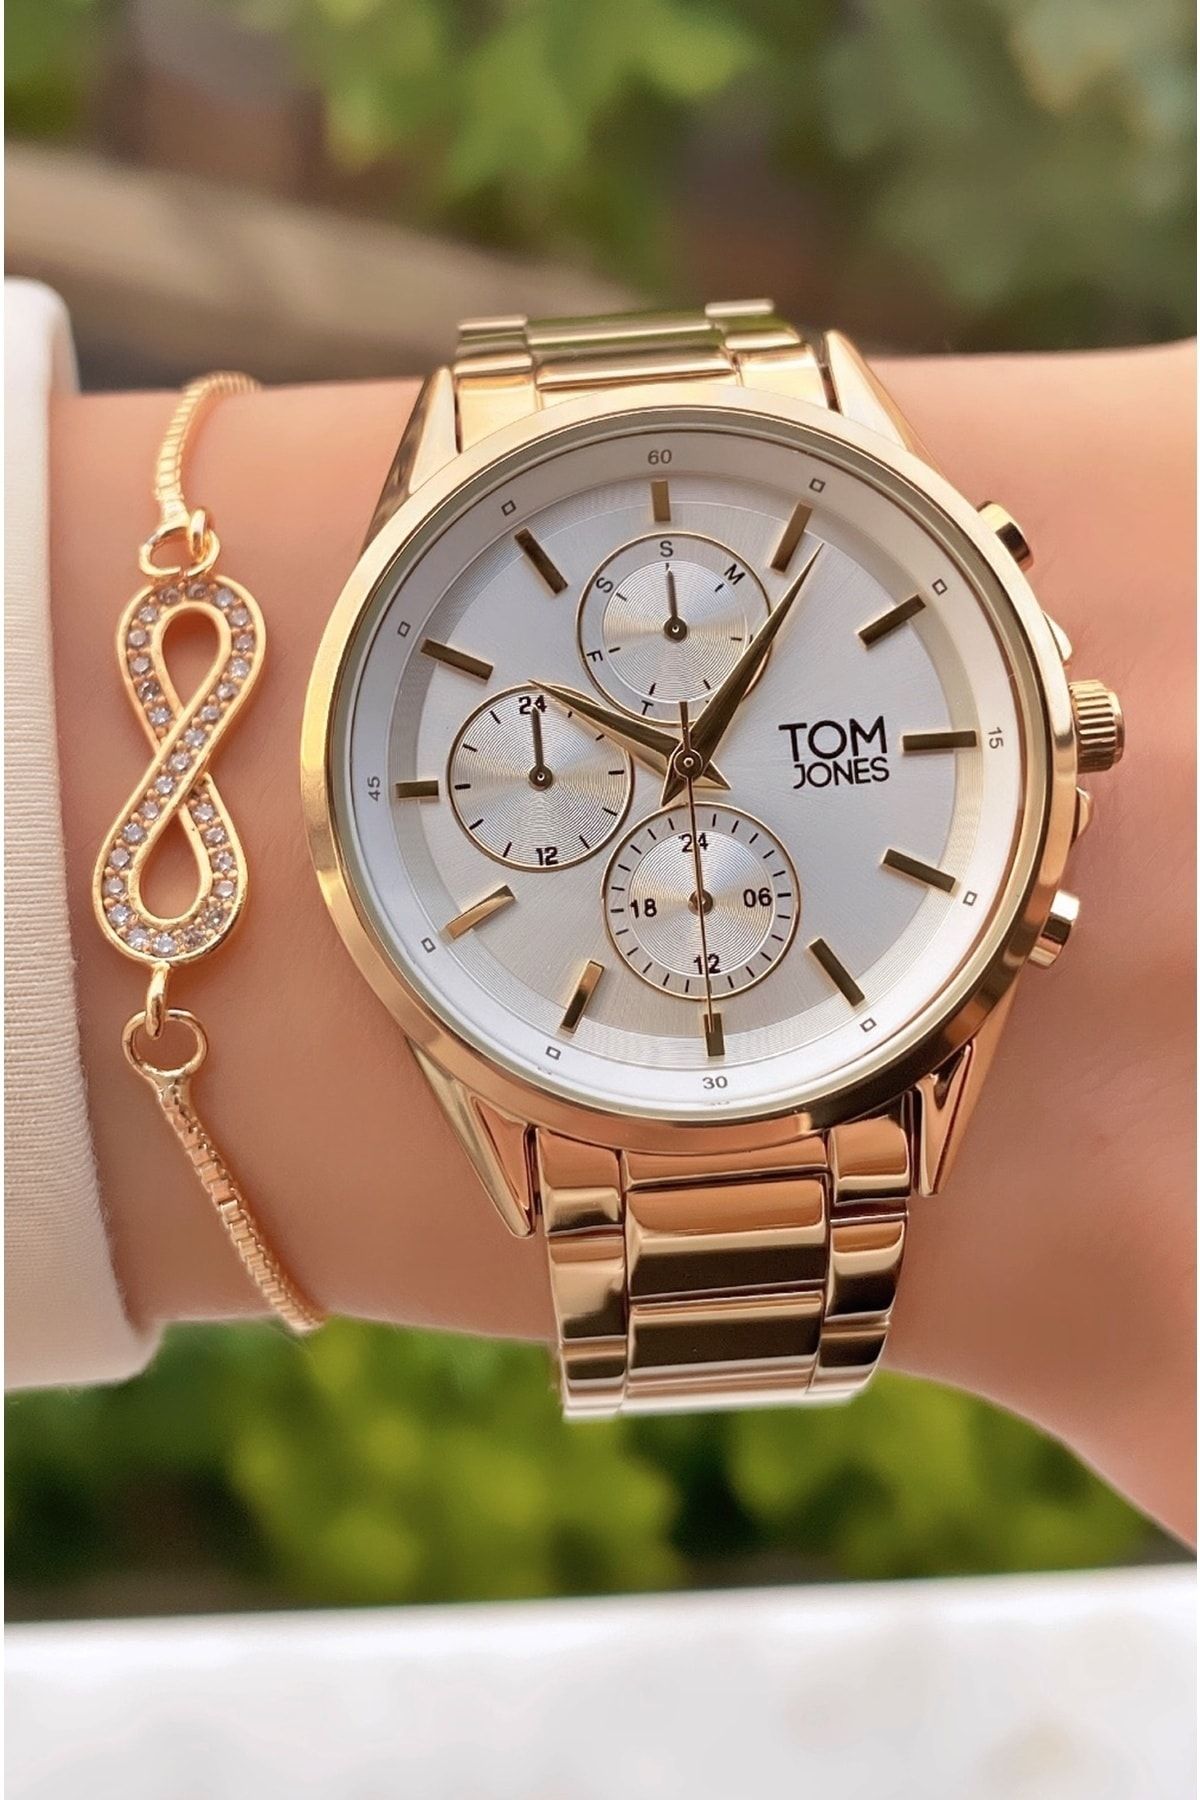 Tom Jones Marka Altın Renk 2 Yıl Garantili Kadın Kol Saati - Bileklik Hediyeli